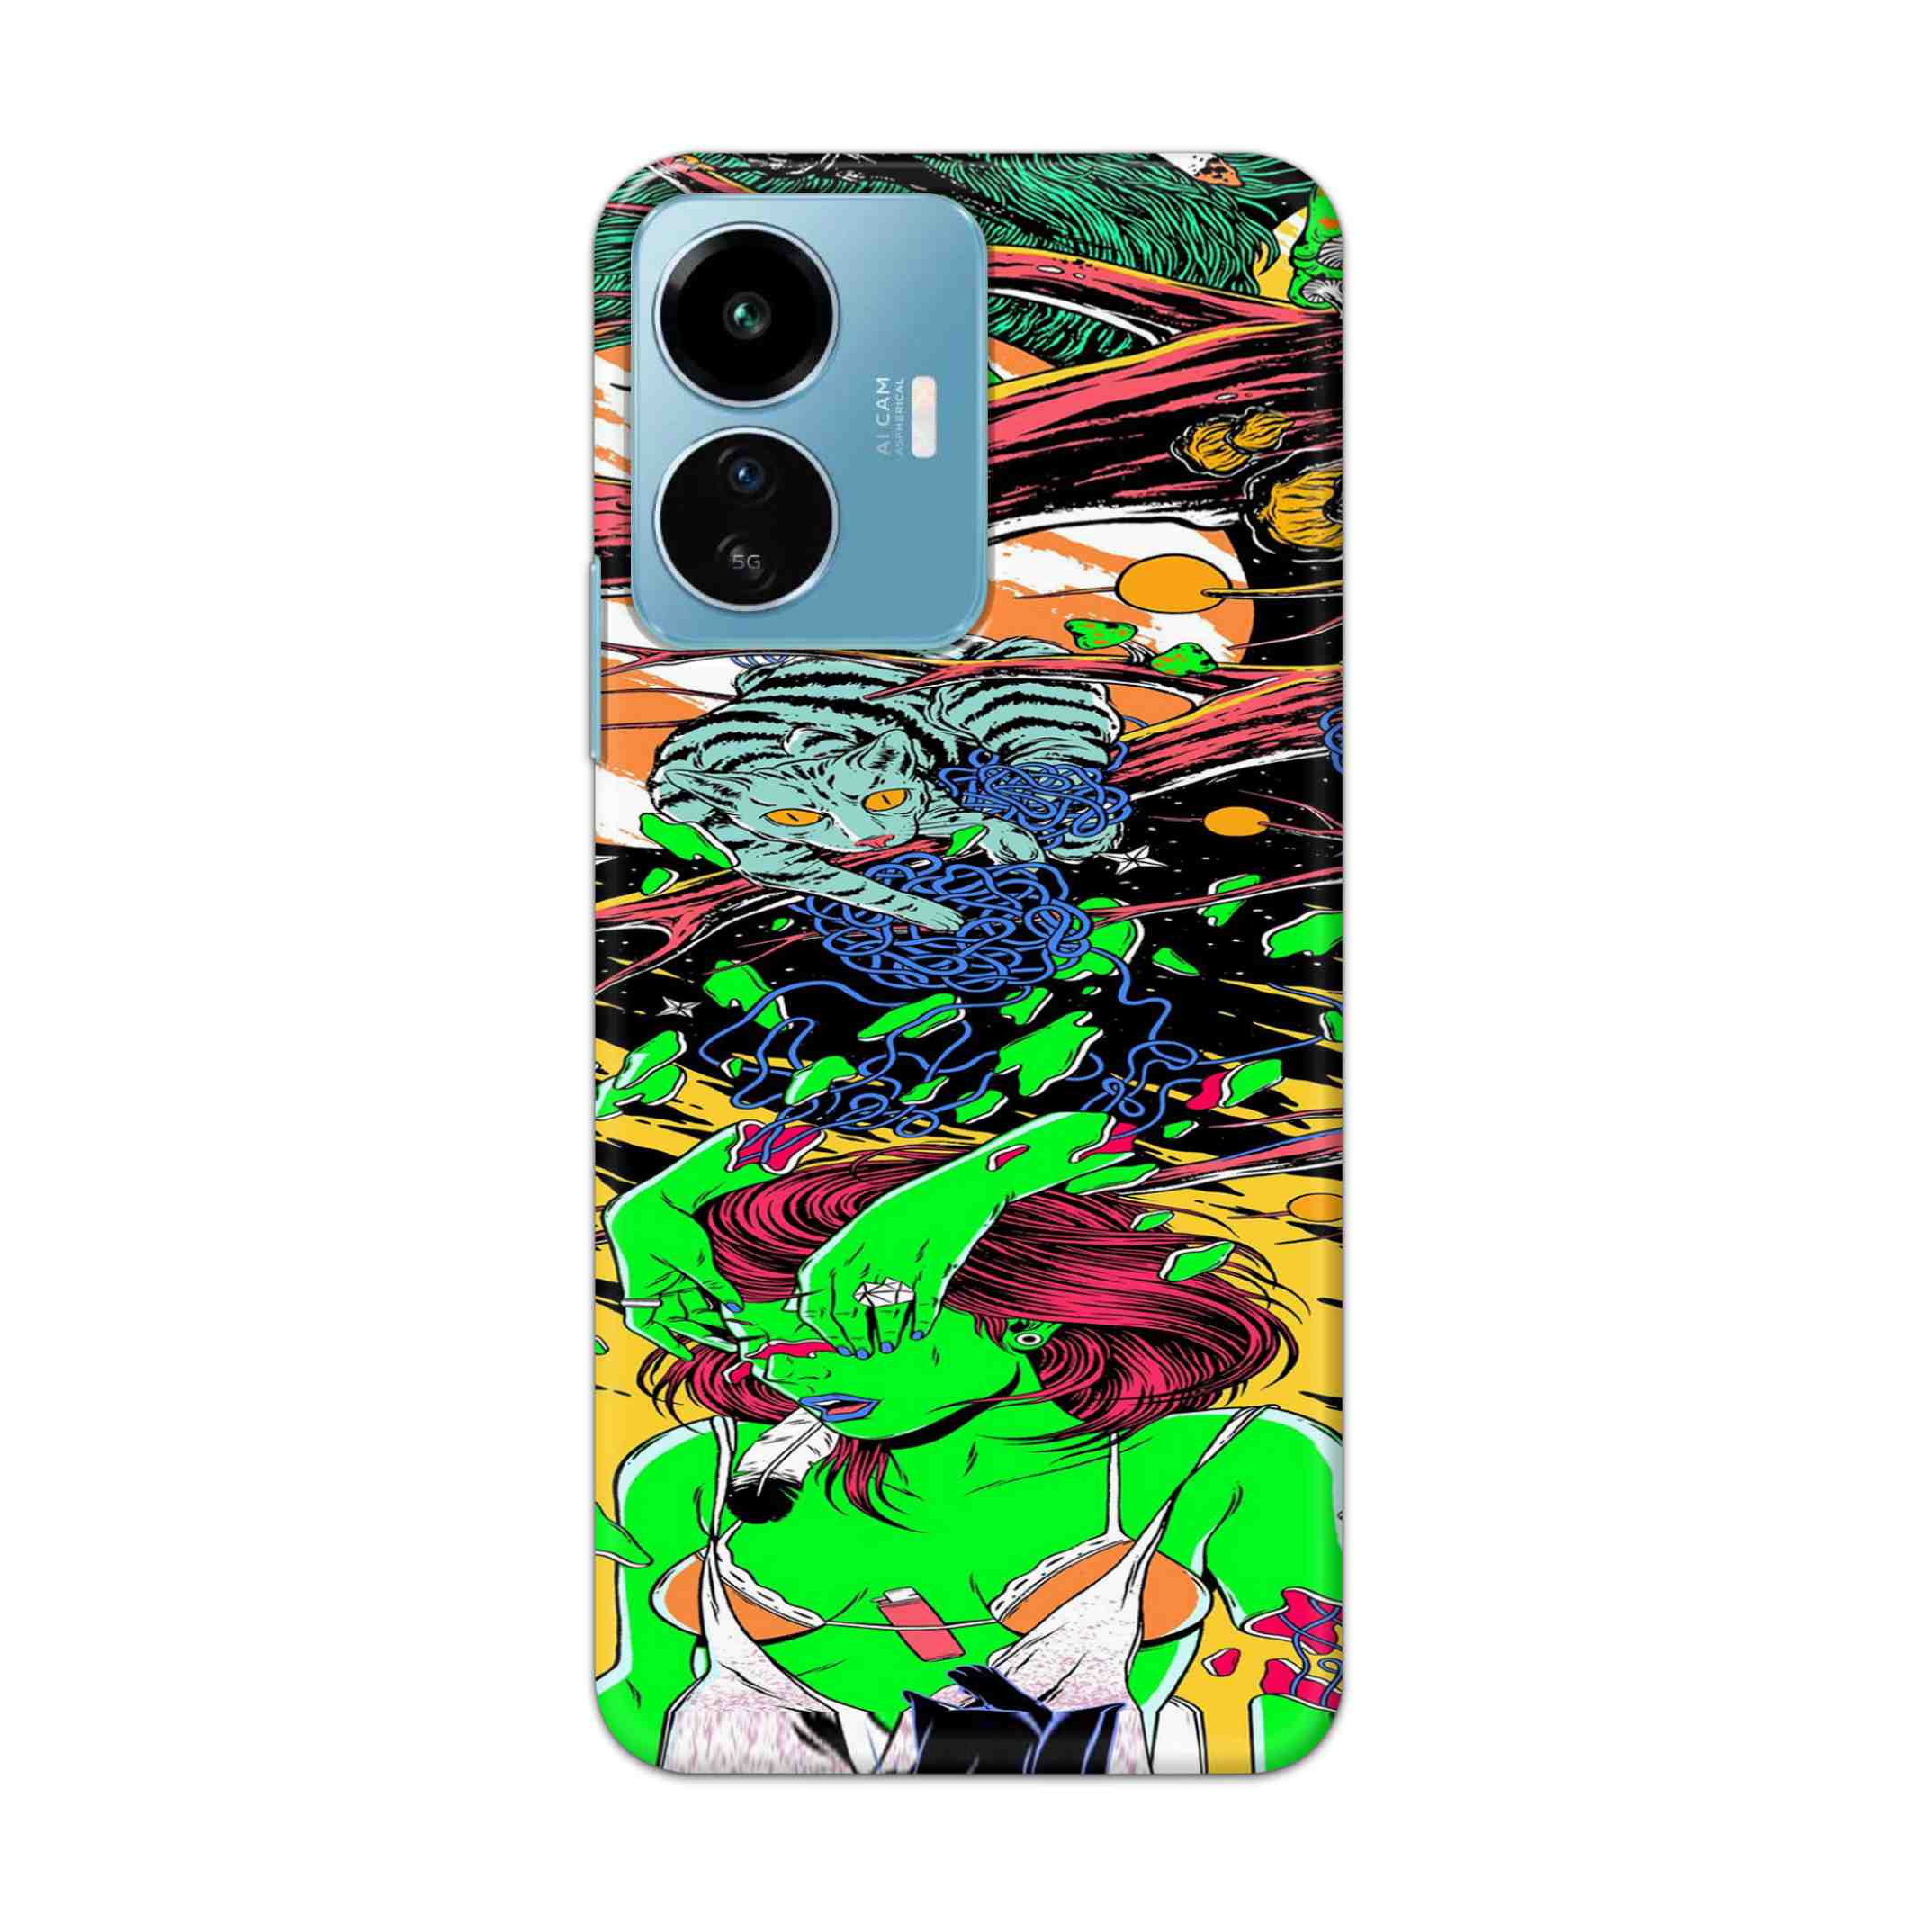 Buy Green Girl Art Hard Back Mobile Phone Case Cover For IQOO Z6 Lite 5G Online